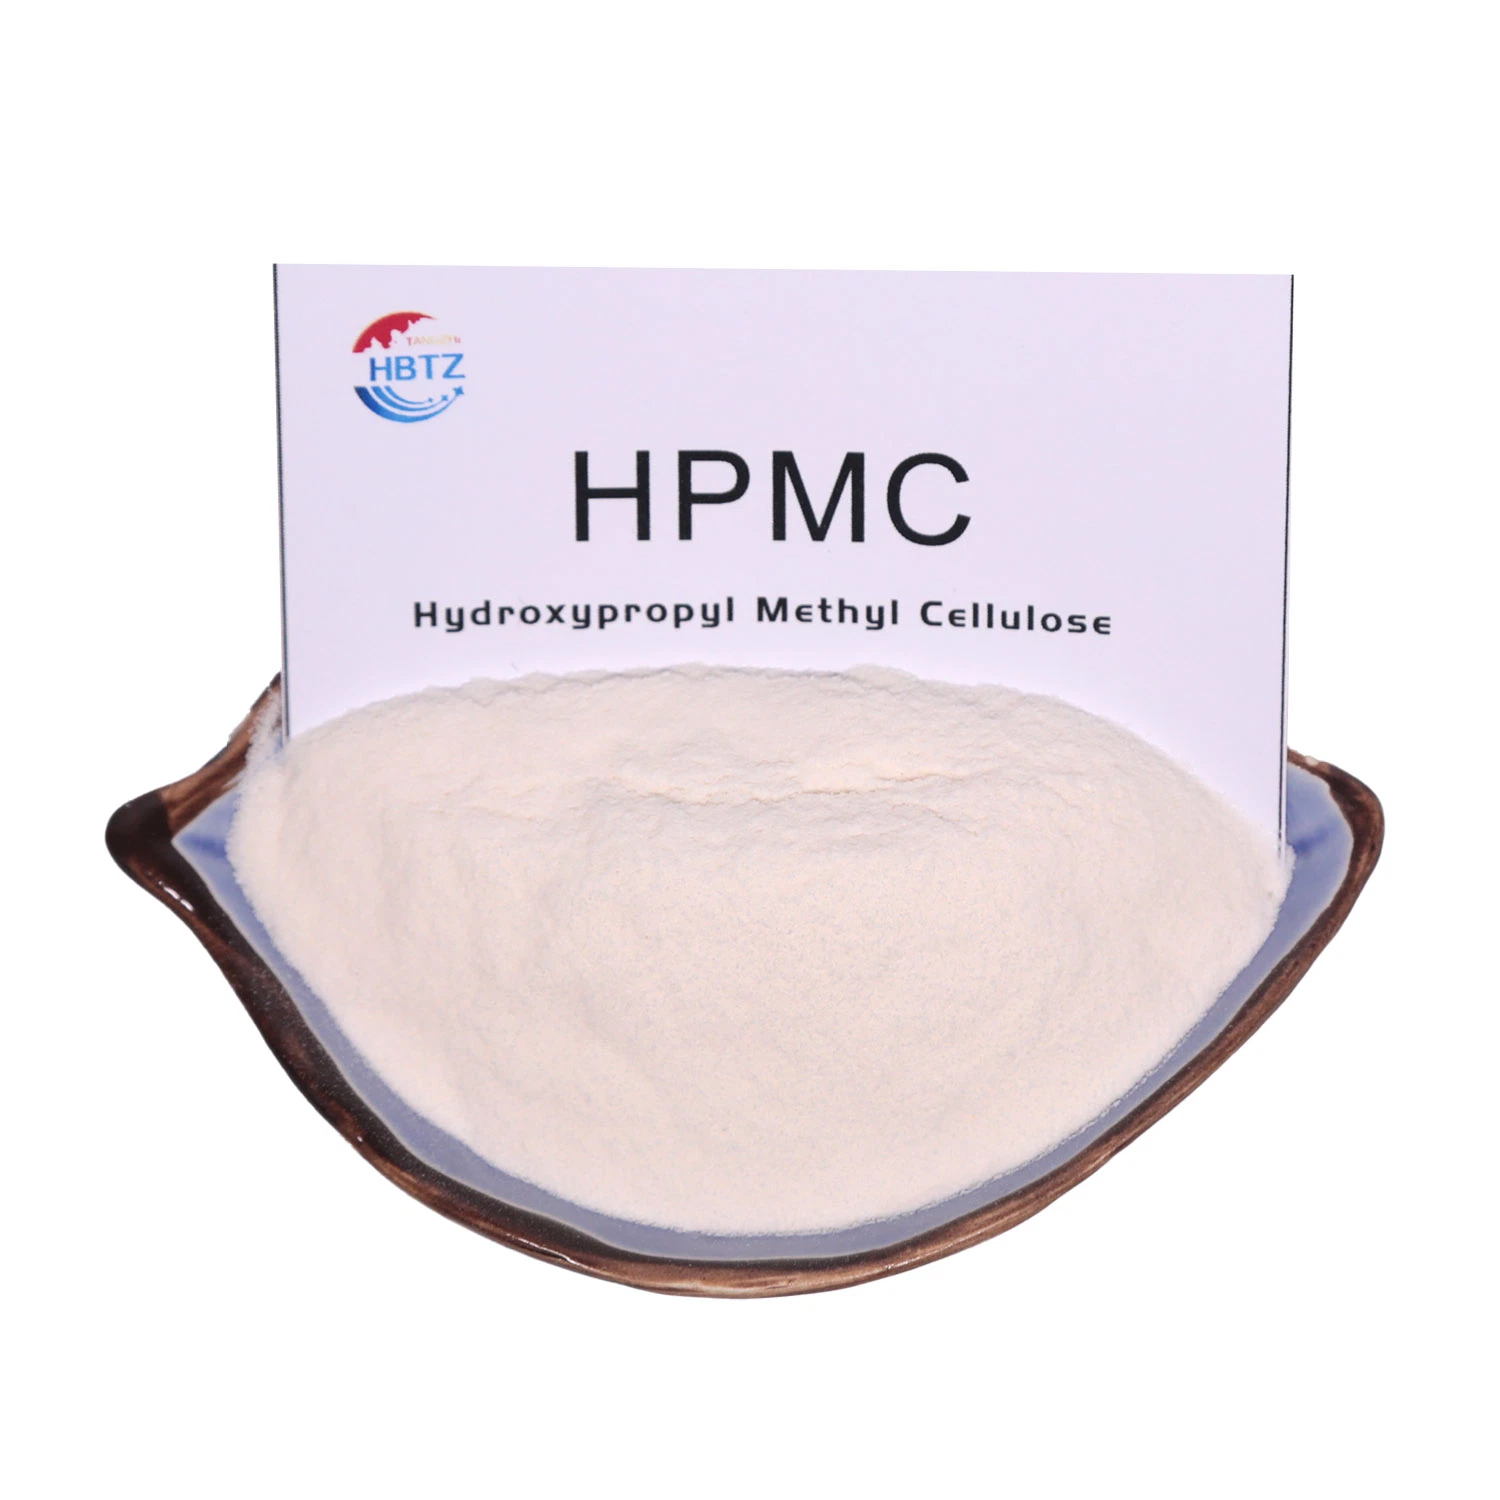 Загуститель HPMC химического HPMC Hydroxypropyl метил целлюлозы с высоким качеством и скопление воды